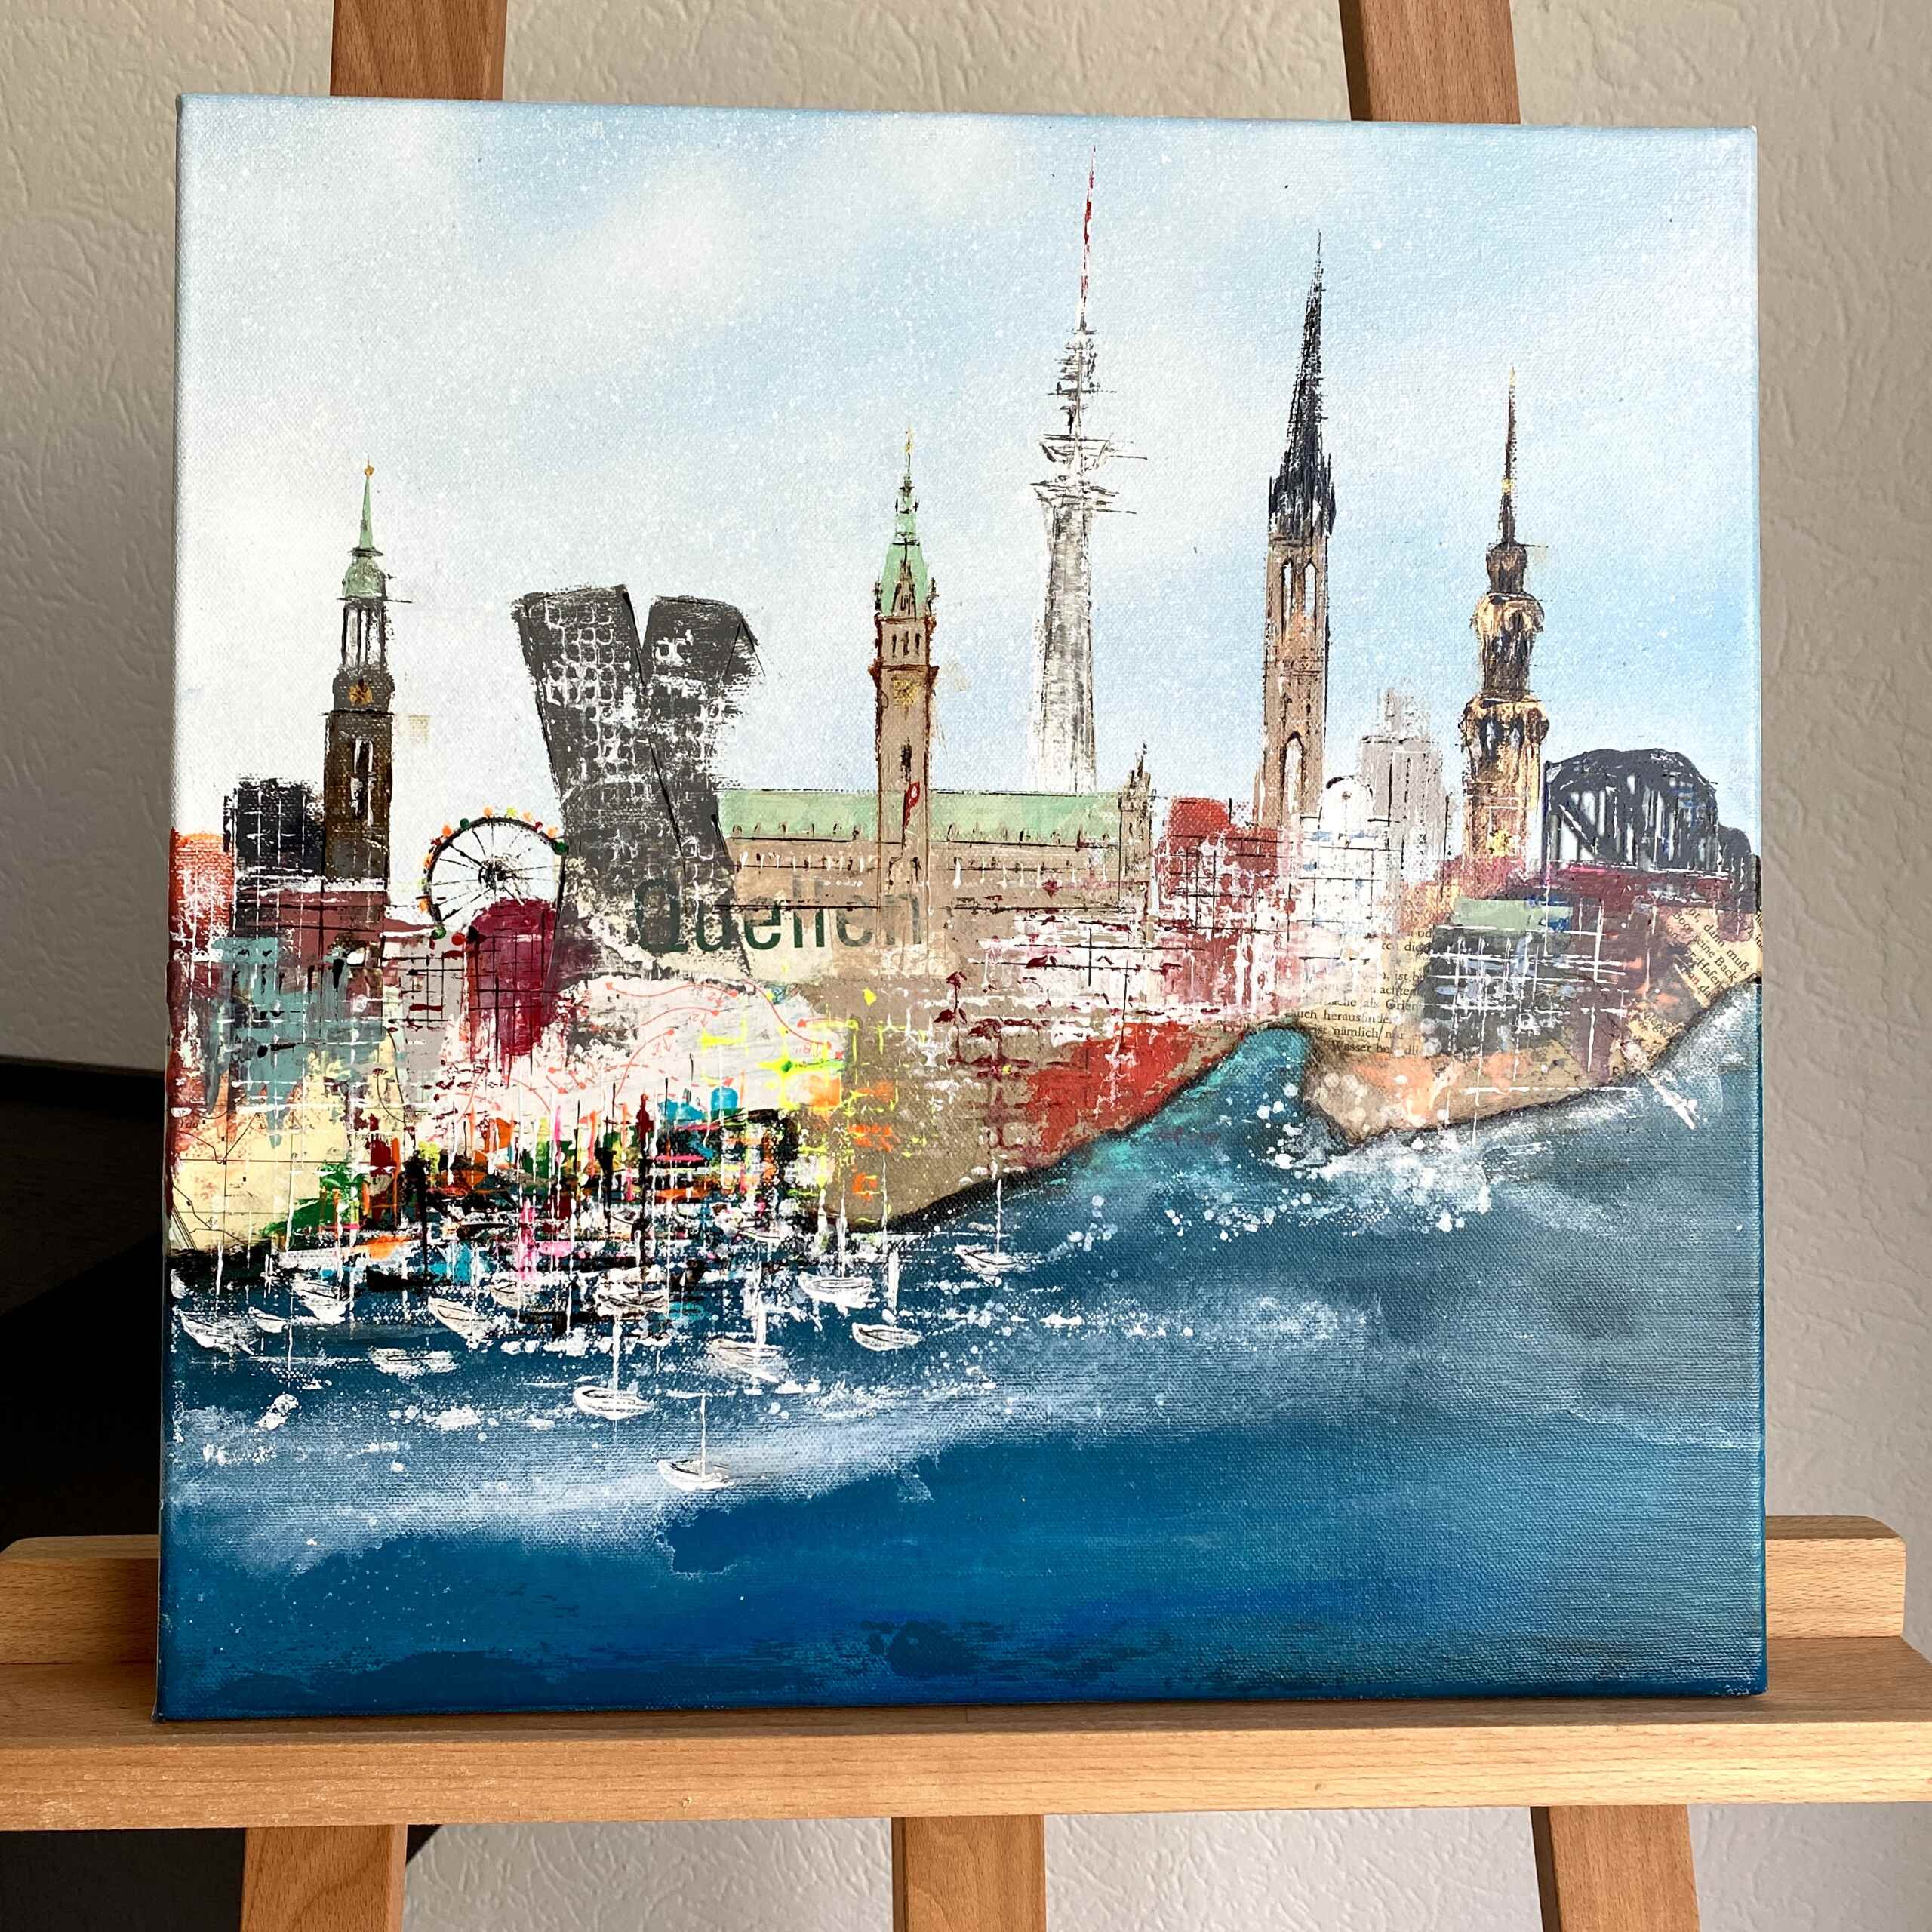 Artwork "Inspiring Hamburg No 2” by Nina Groth